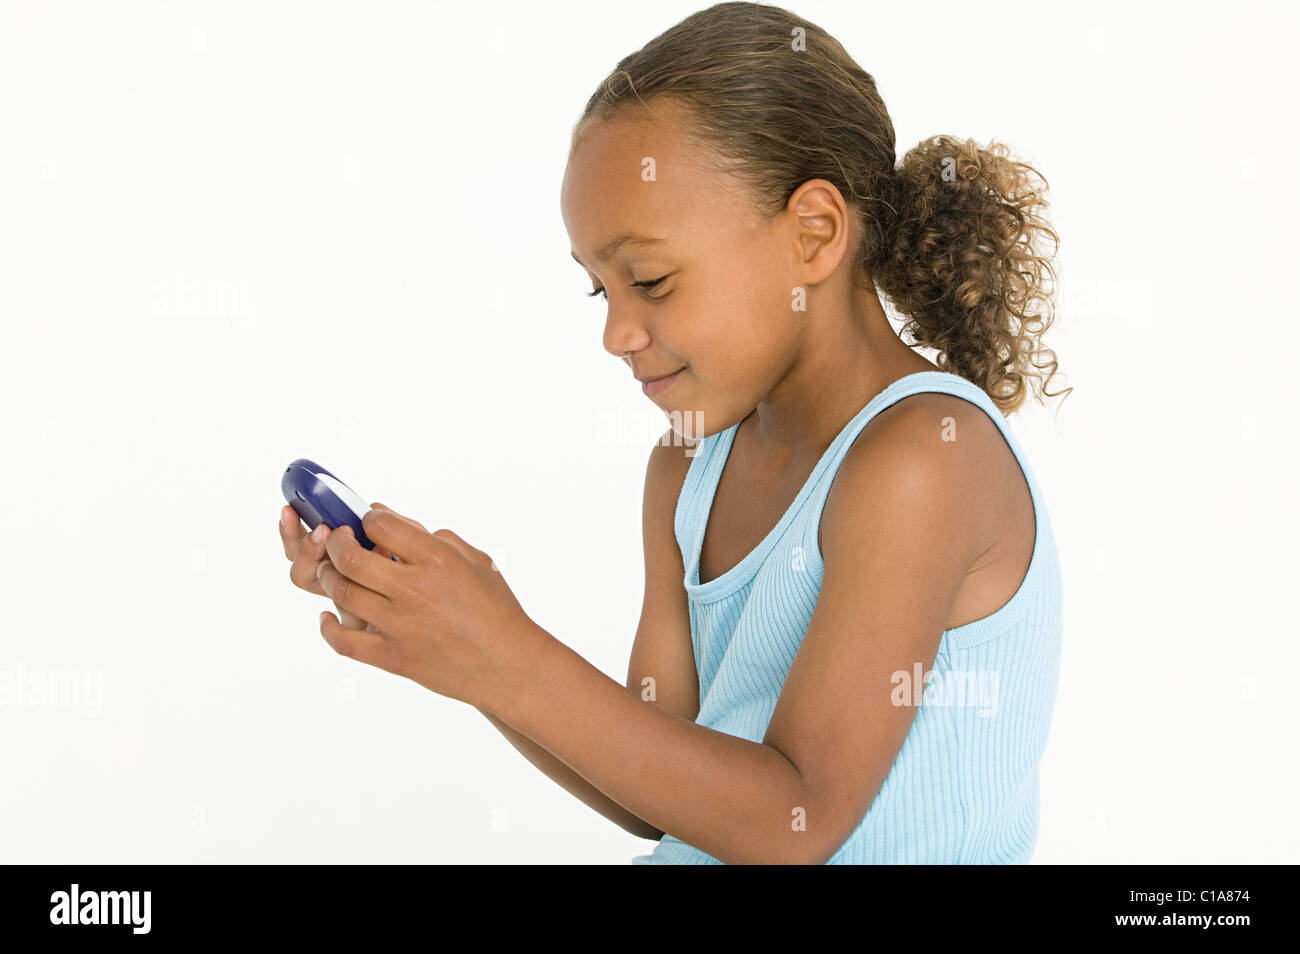 Mädchen spielen auf Handheld-Gerät Stockfoto